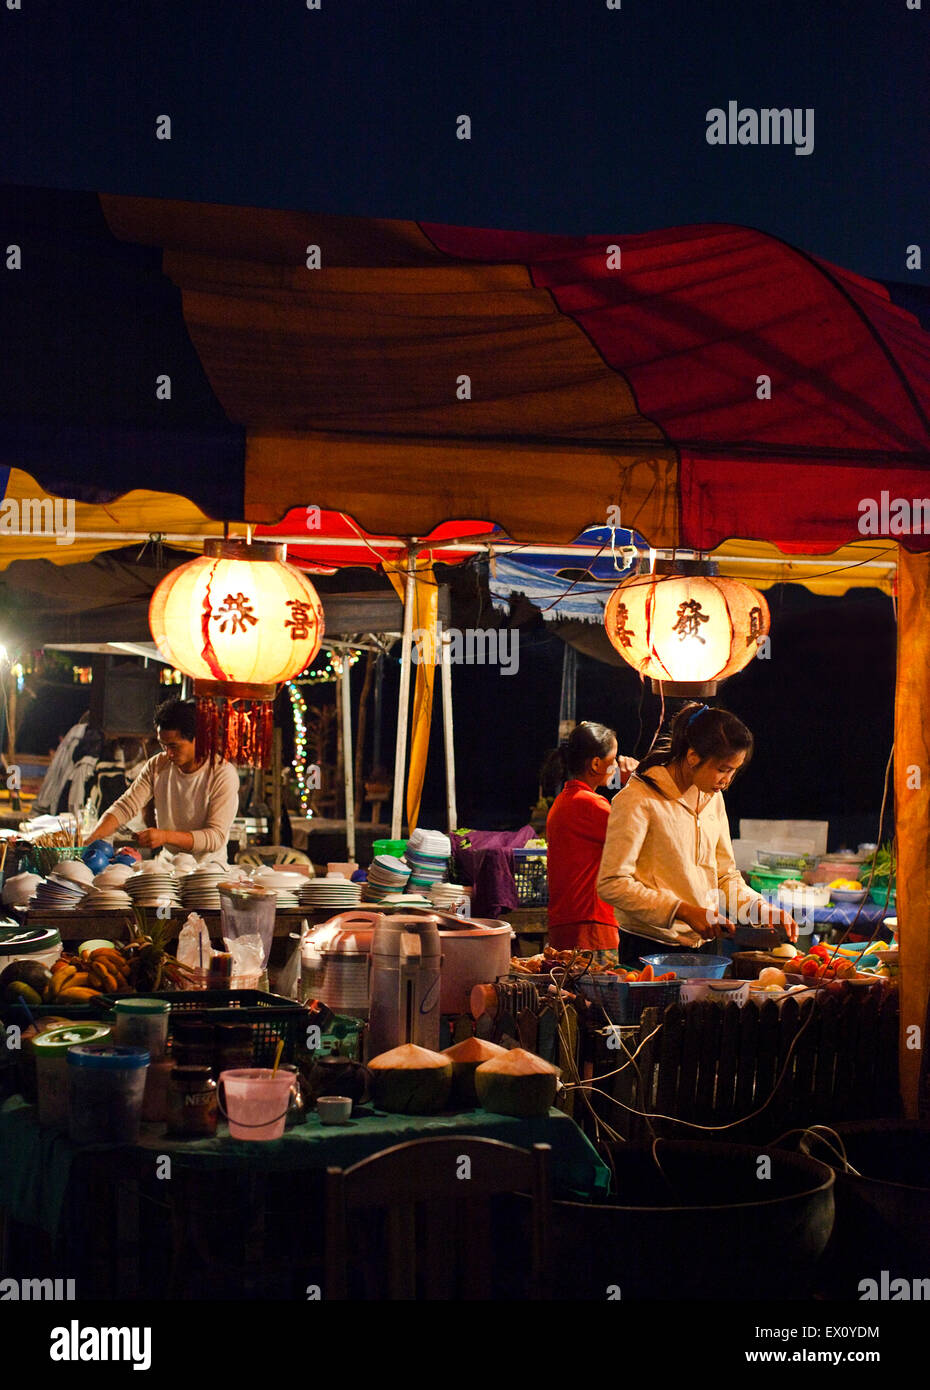 Alimentare i fornitori di stallo al mercato notturno con il fiume Mekong, Quai Fa Ngum, Vientiane, Laos P.D.R. Foto Stock